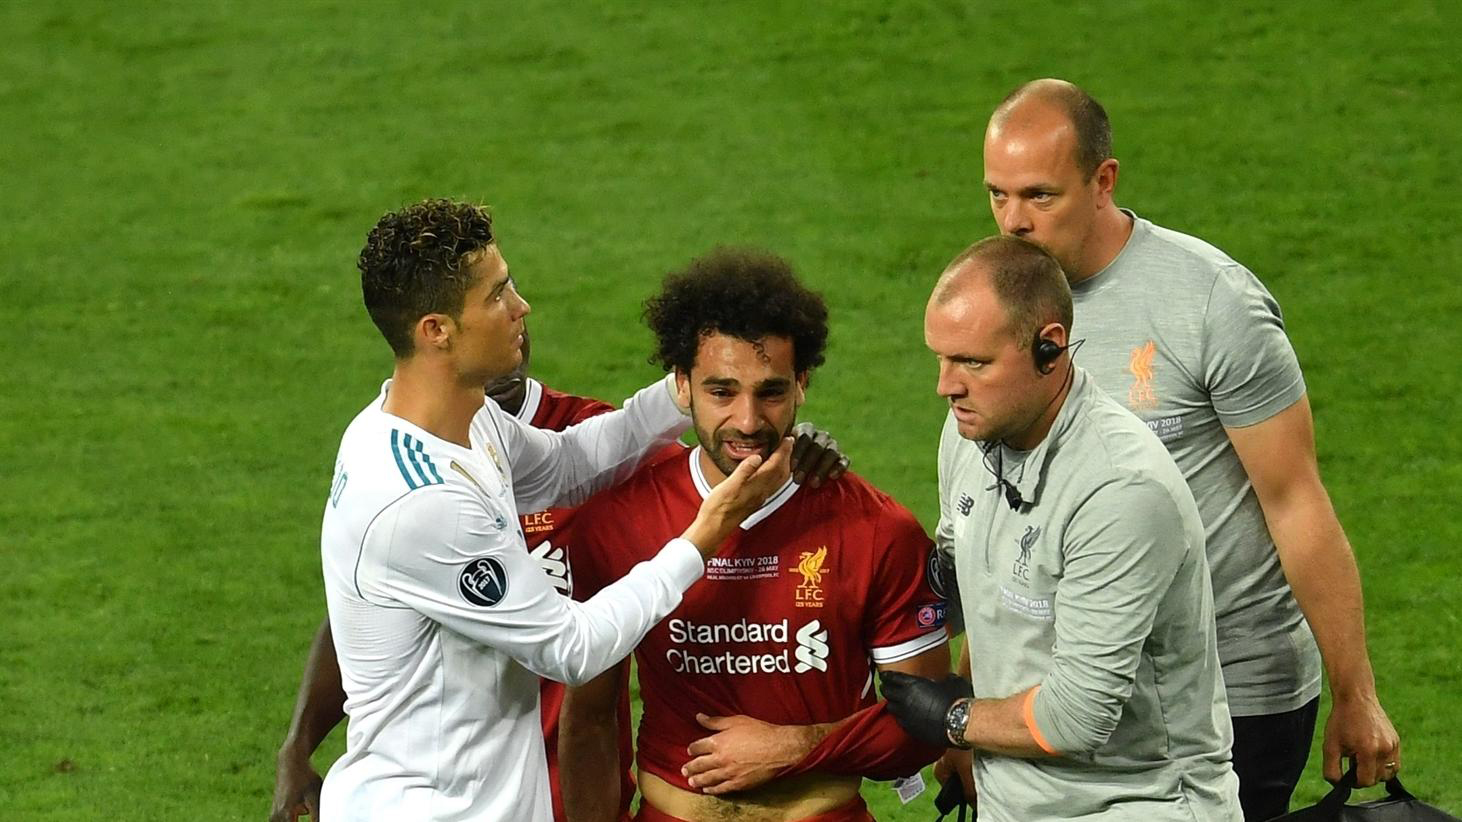 Mohamed Salah (áo đỏ) rời sân trong nước mắt, với sự chia sẻ của C.Ronaldo (áo trắng) trong trận chung kết UCL 2017-2018. 						               Ảnh: UEFA